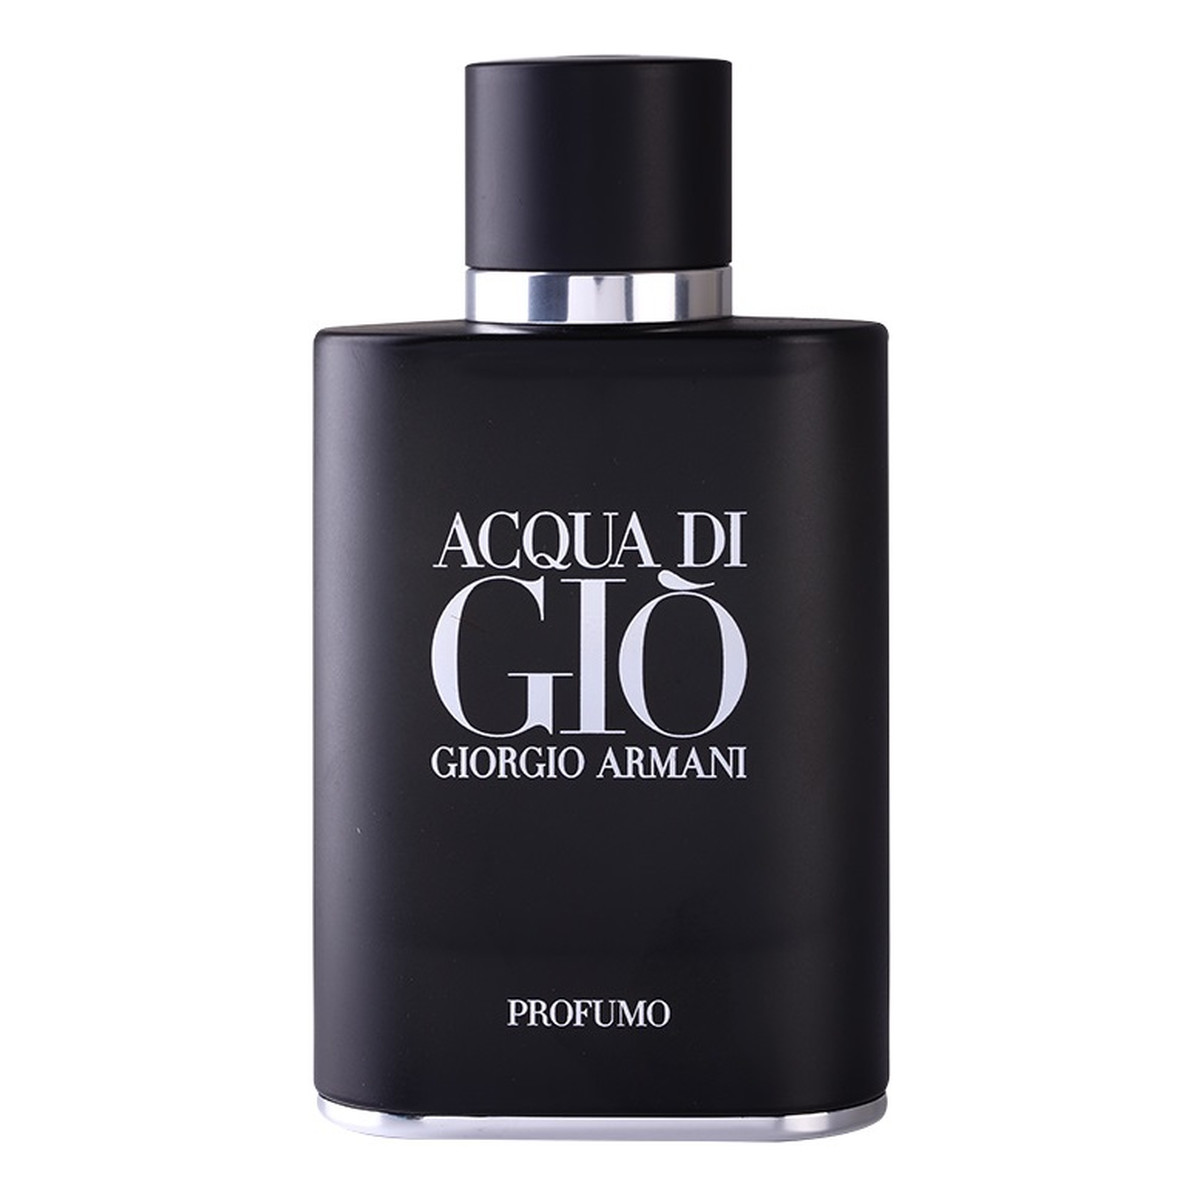 Giorgio Armani Acqua di Gio Profumo Woda perfumowana spray 75ml